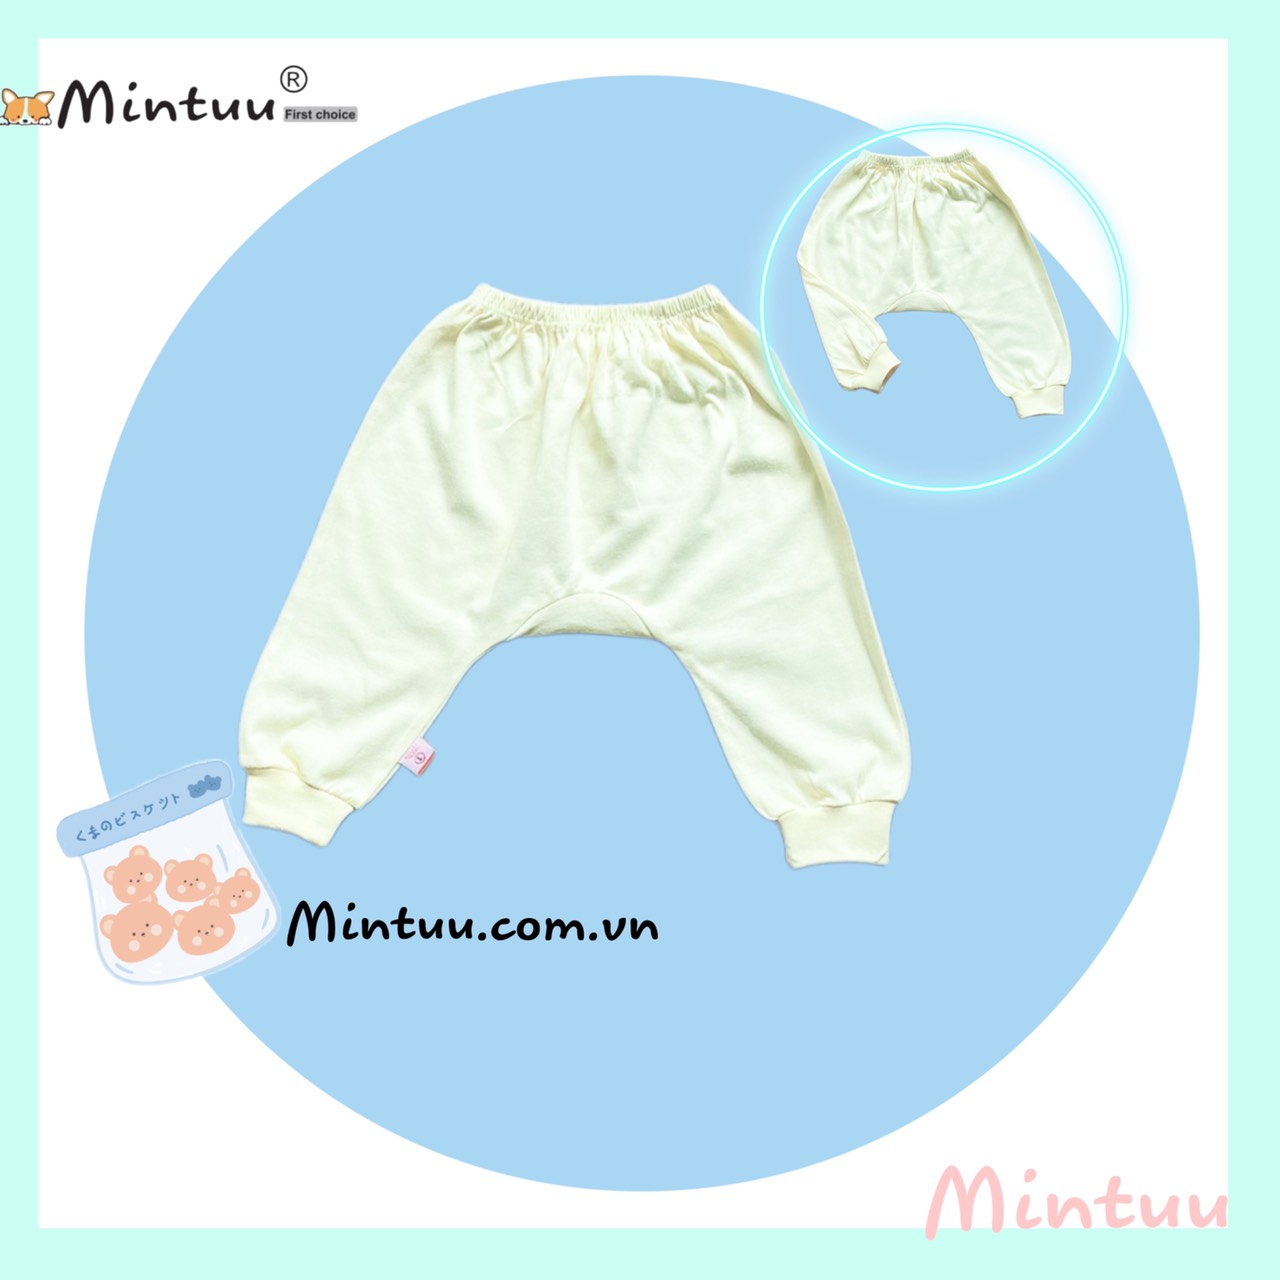 Quần đáy nêm, quần đóng bỉm màu gấu bo cho bé sơ sinh, chất liệu vải 100% cotton, thương hiệu MINTUU - Thời trang và đồ dùng cho trẻ em - Hana’s kids